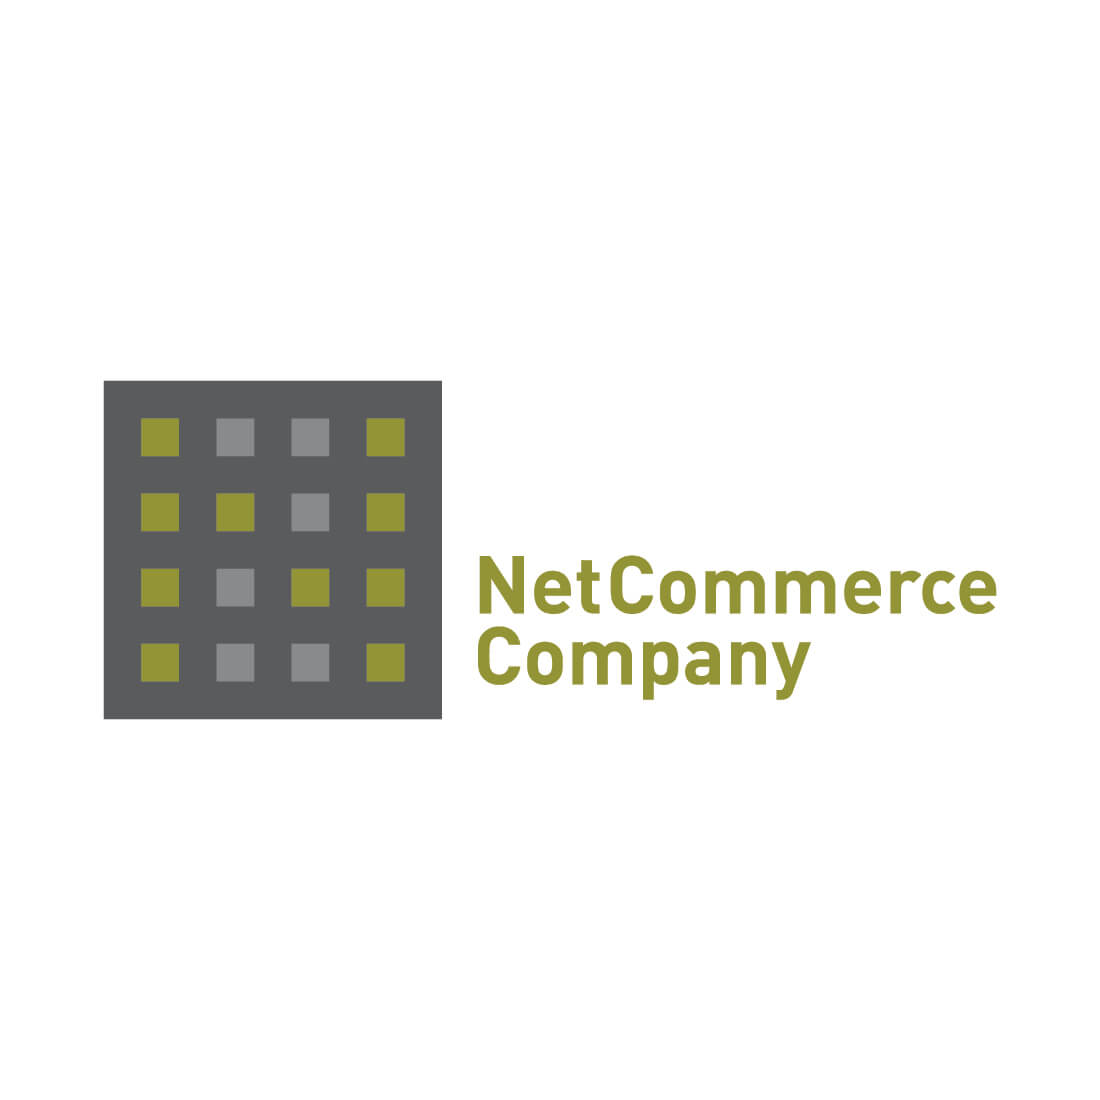 NetCommerce Company